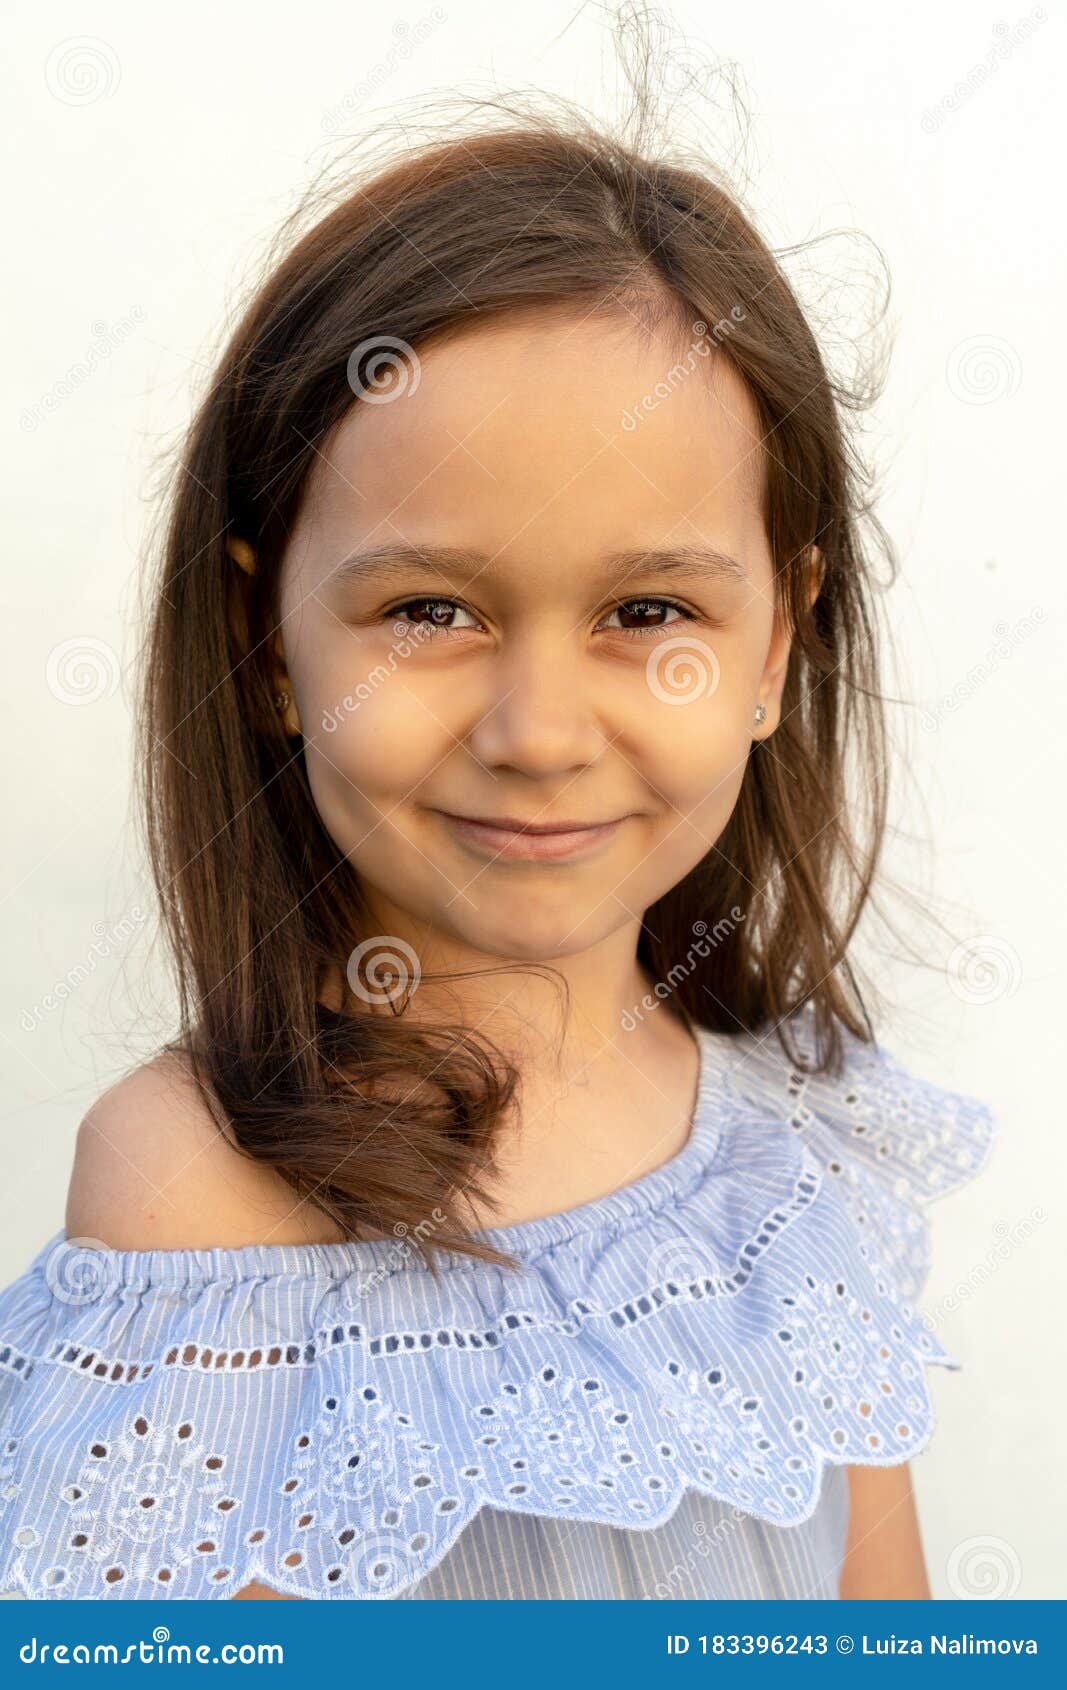 Ritratto Di Una Bambina Di 7 Anni Con Capelli Castani E Occhi